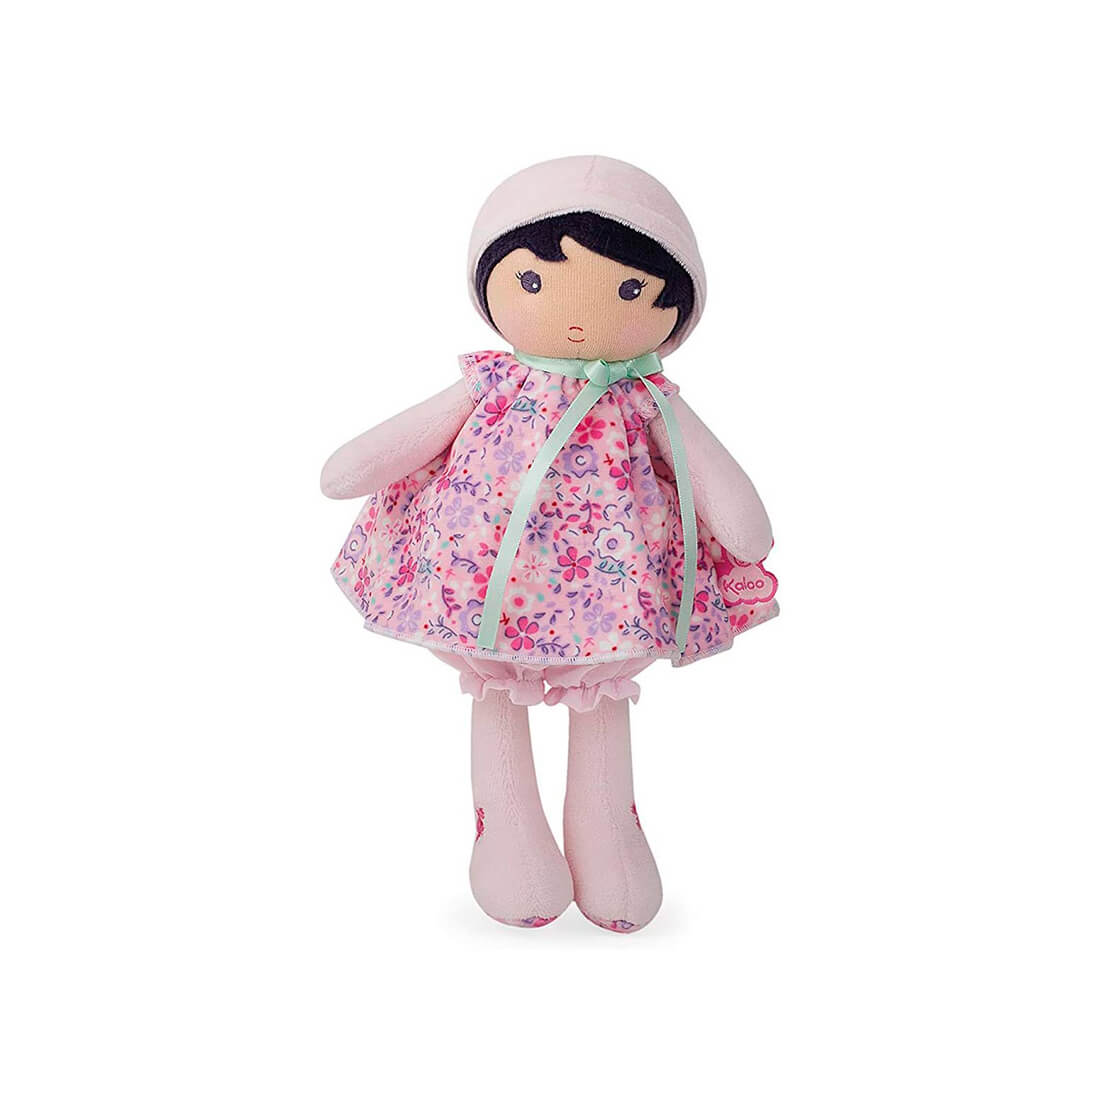 Текстильная кукла Kaloo "Fleur", в розовом платье, серия "Tendresse de Kaloo", 25 см